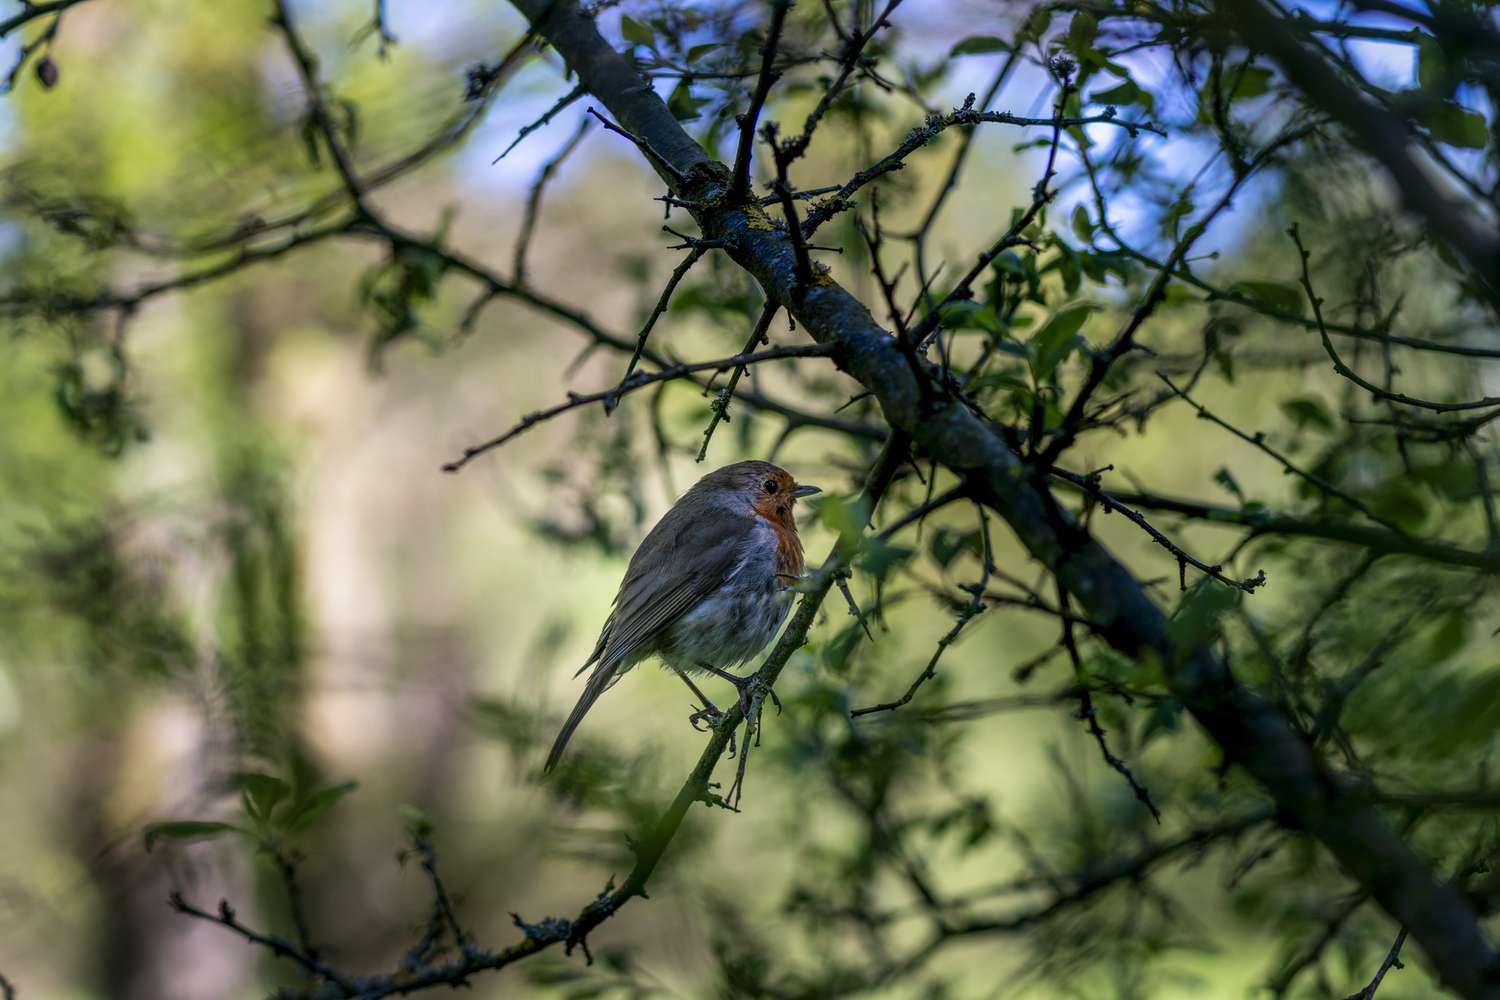 一只鸟心满意足地坐在灌木丛中